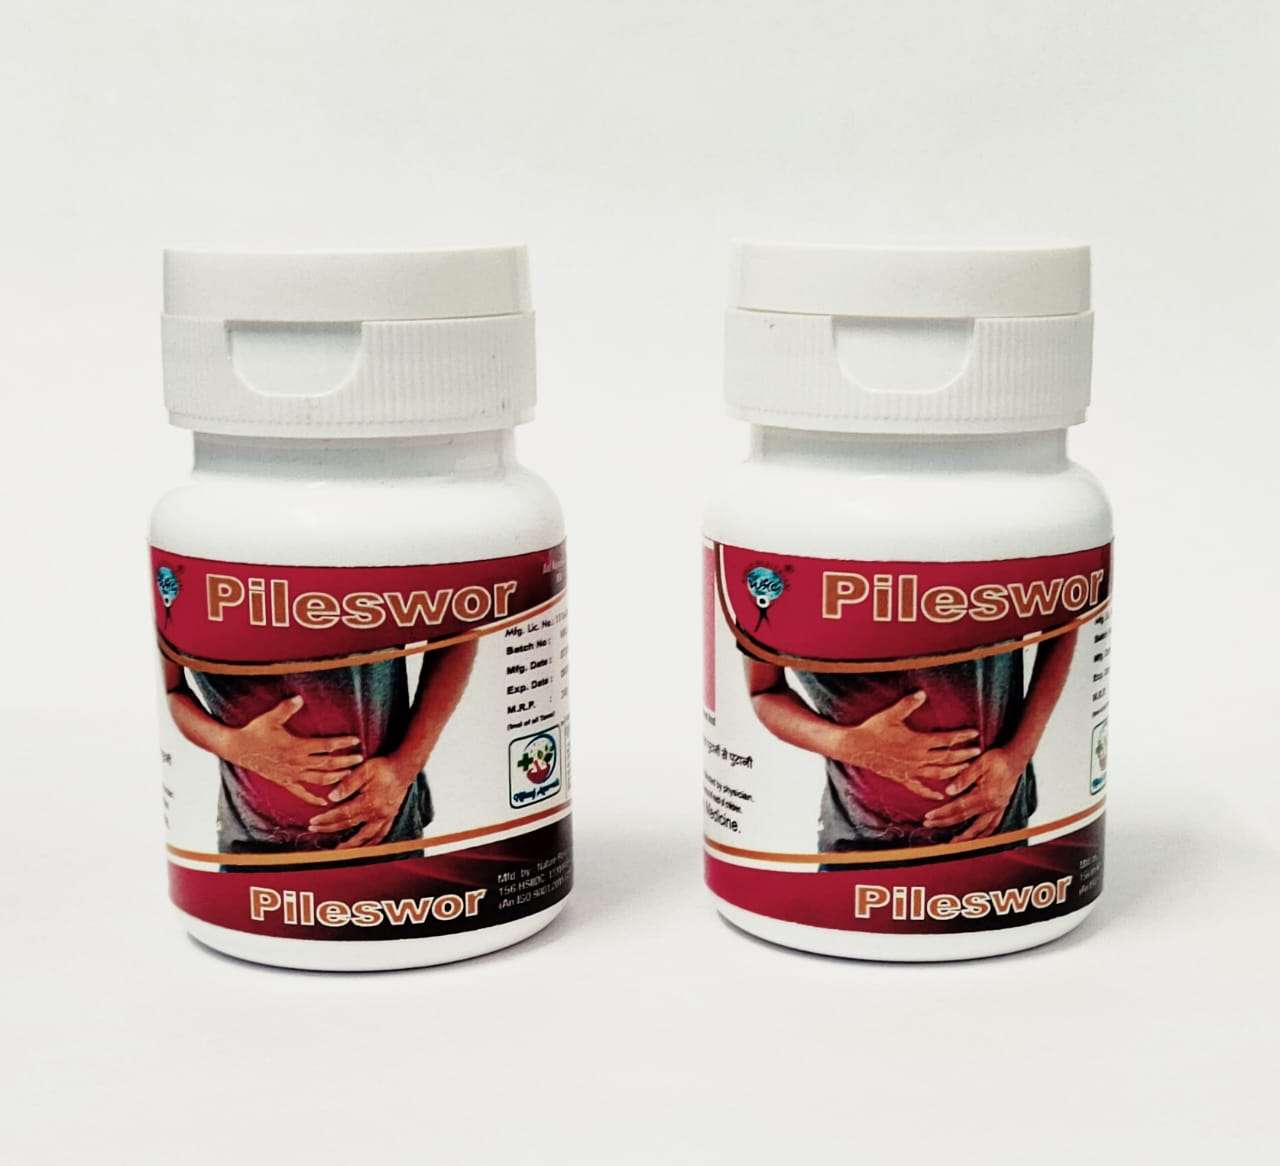 herbal capsules for piles & fistula